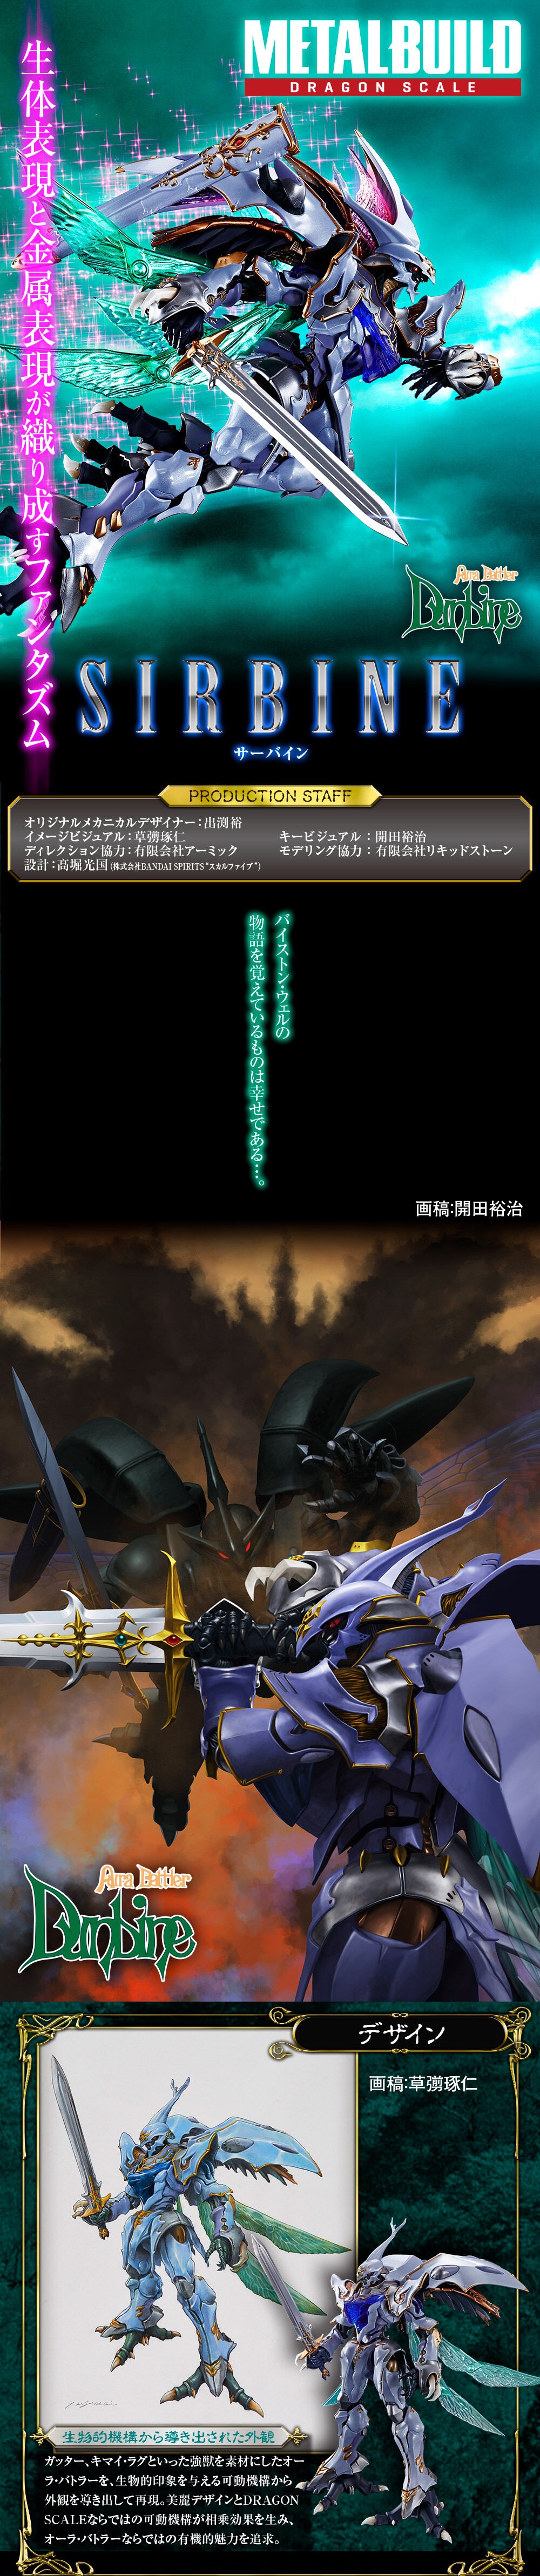 日版] Bandai Metal Build 魂商店限定可動模型- Dragon Scale Sirbine